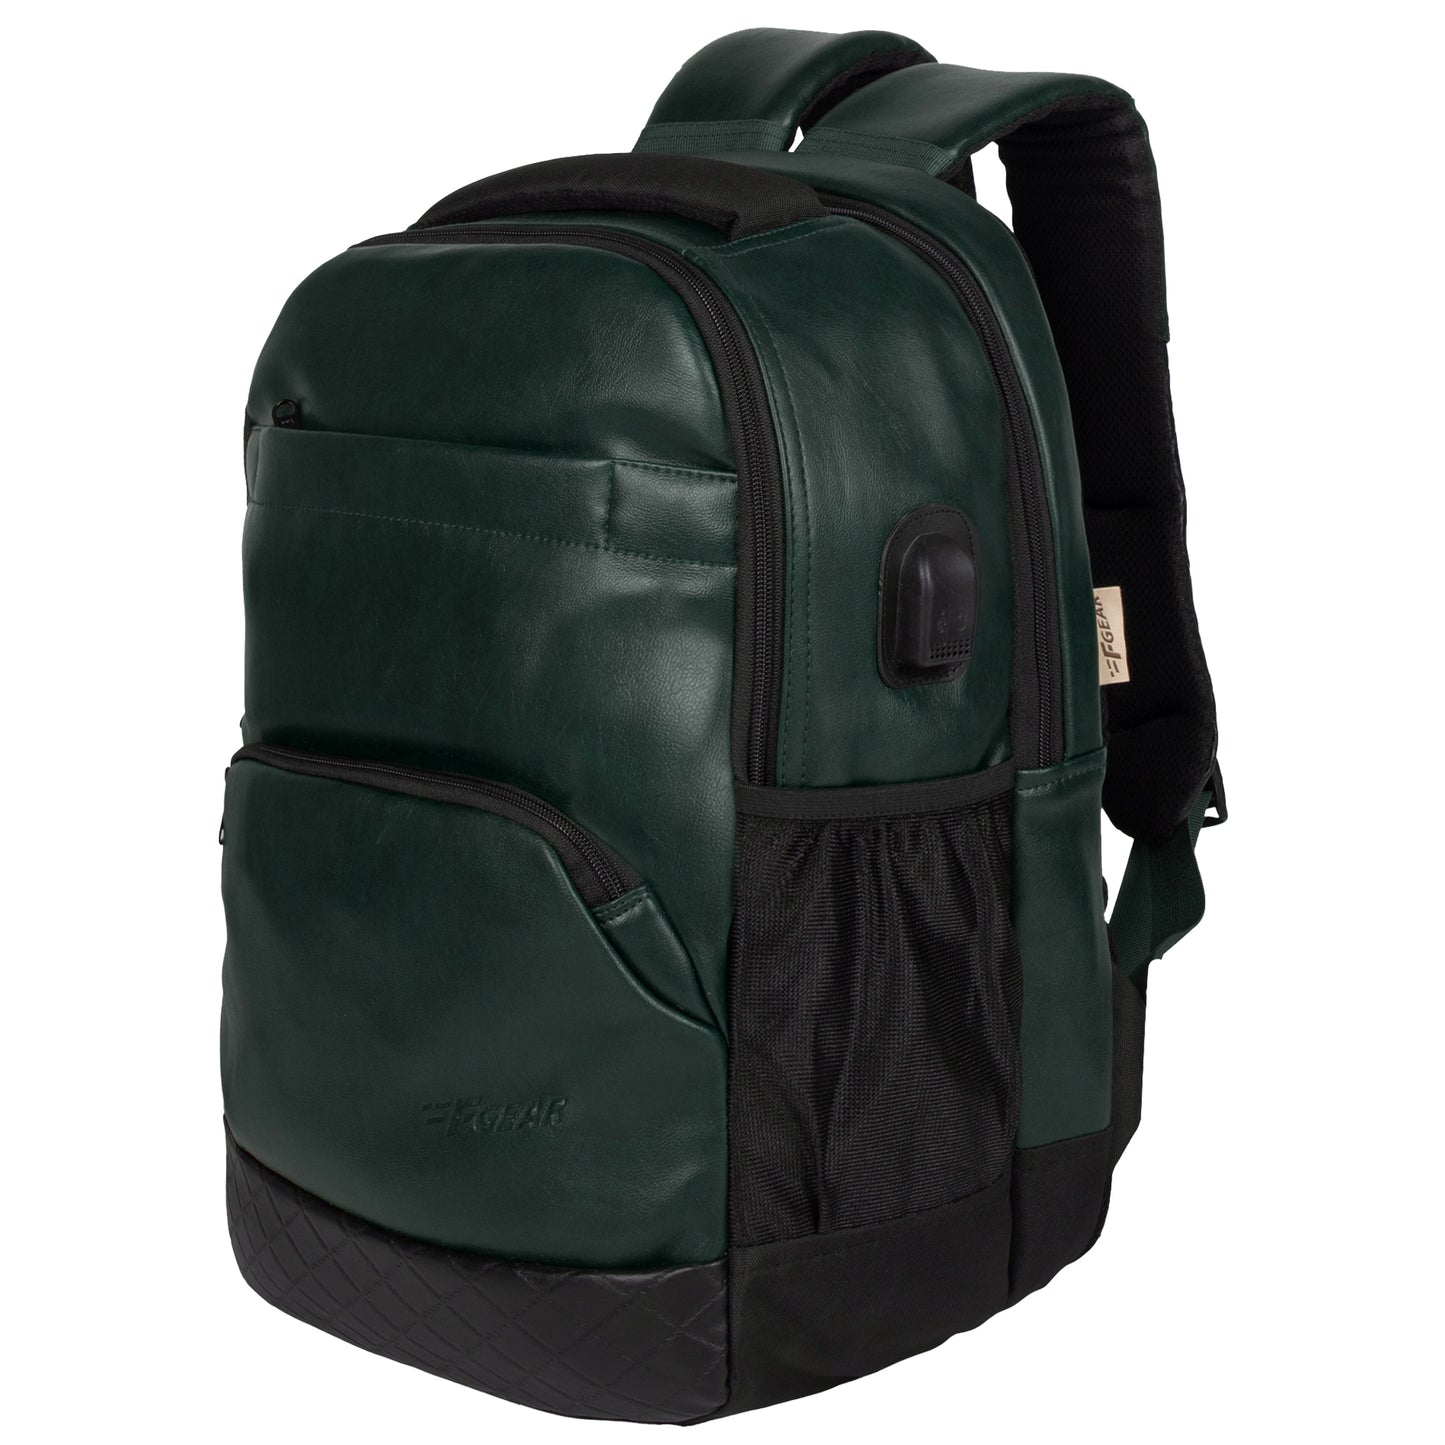 Luxur V2 27L Olive Green Laptop Backpack